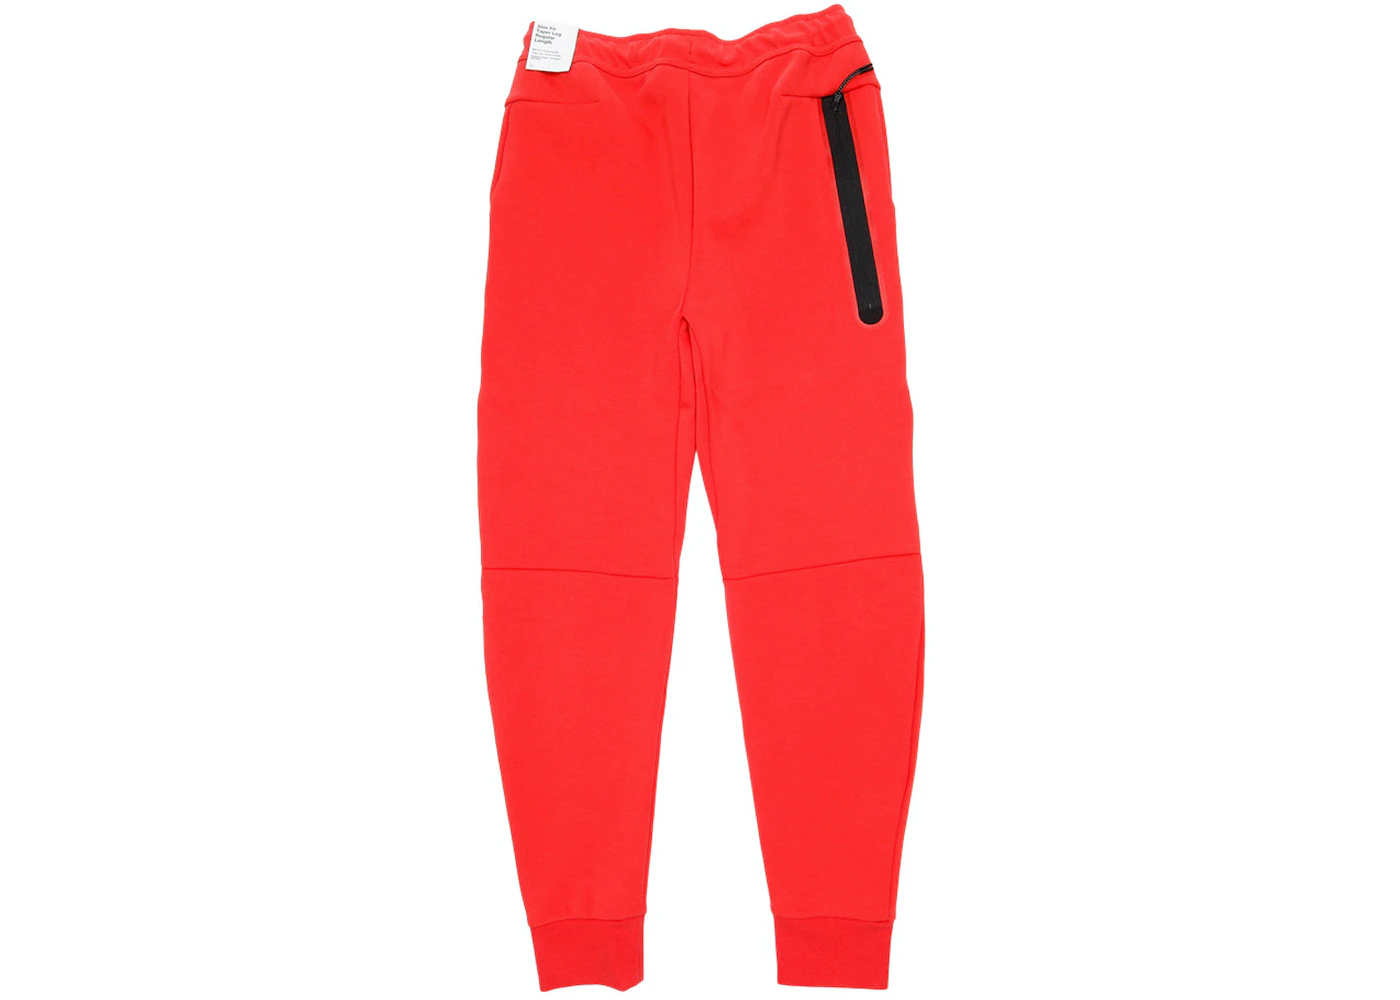 Nike Sportswear Tech Fleece Pant Lobster Red Men's - US